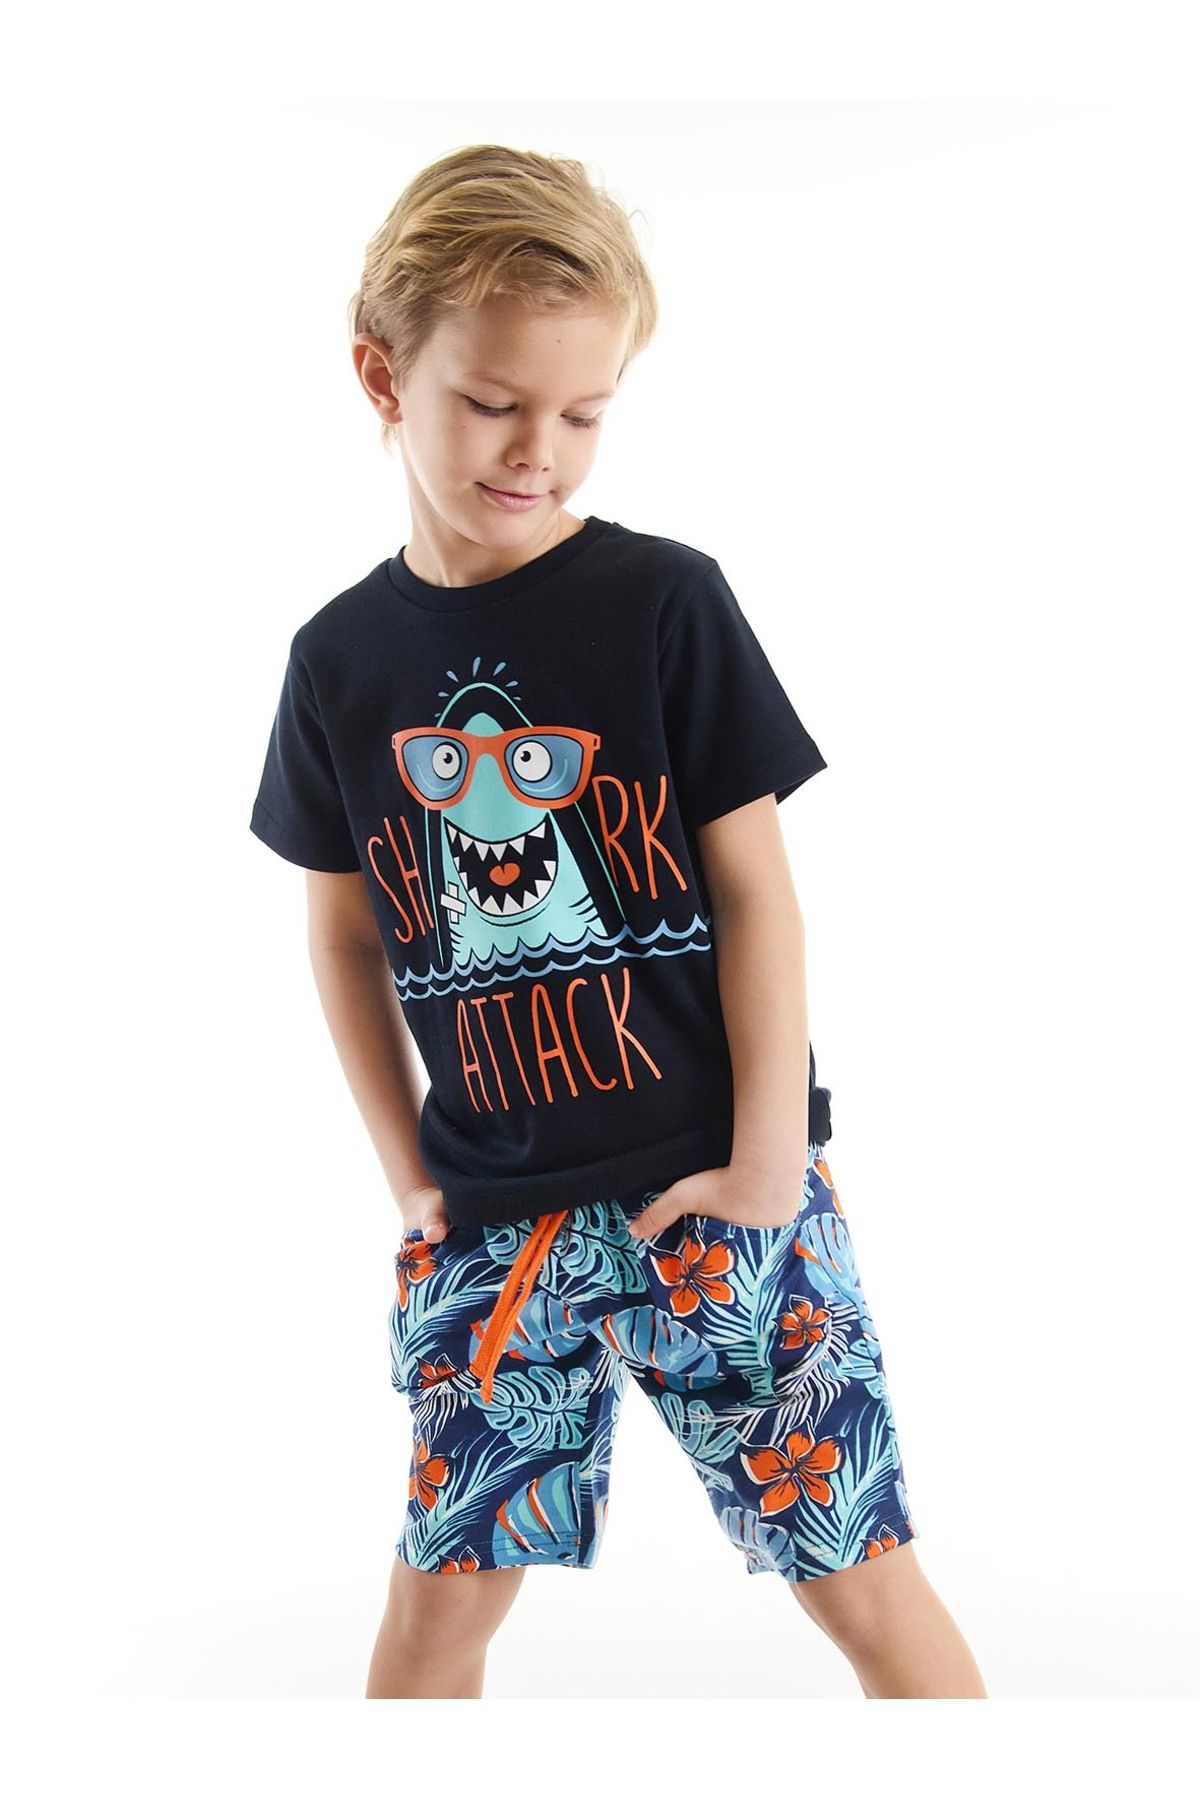 Denokids Shark Hawaii Erkek Çocuk T-shirt Şort Takım